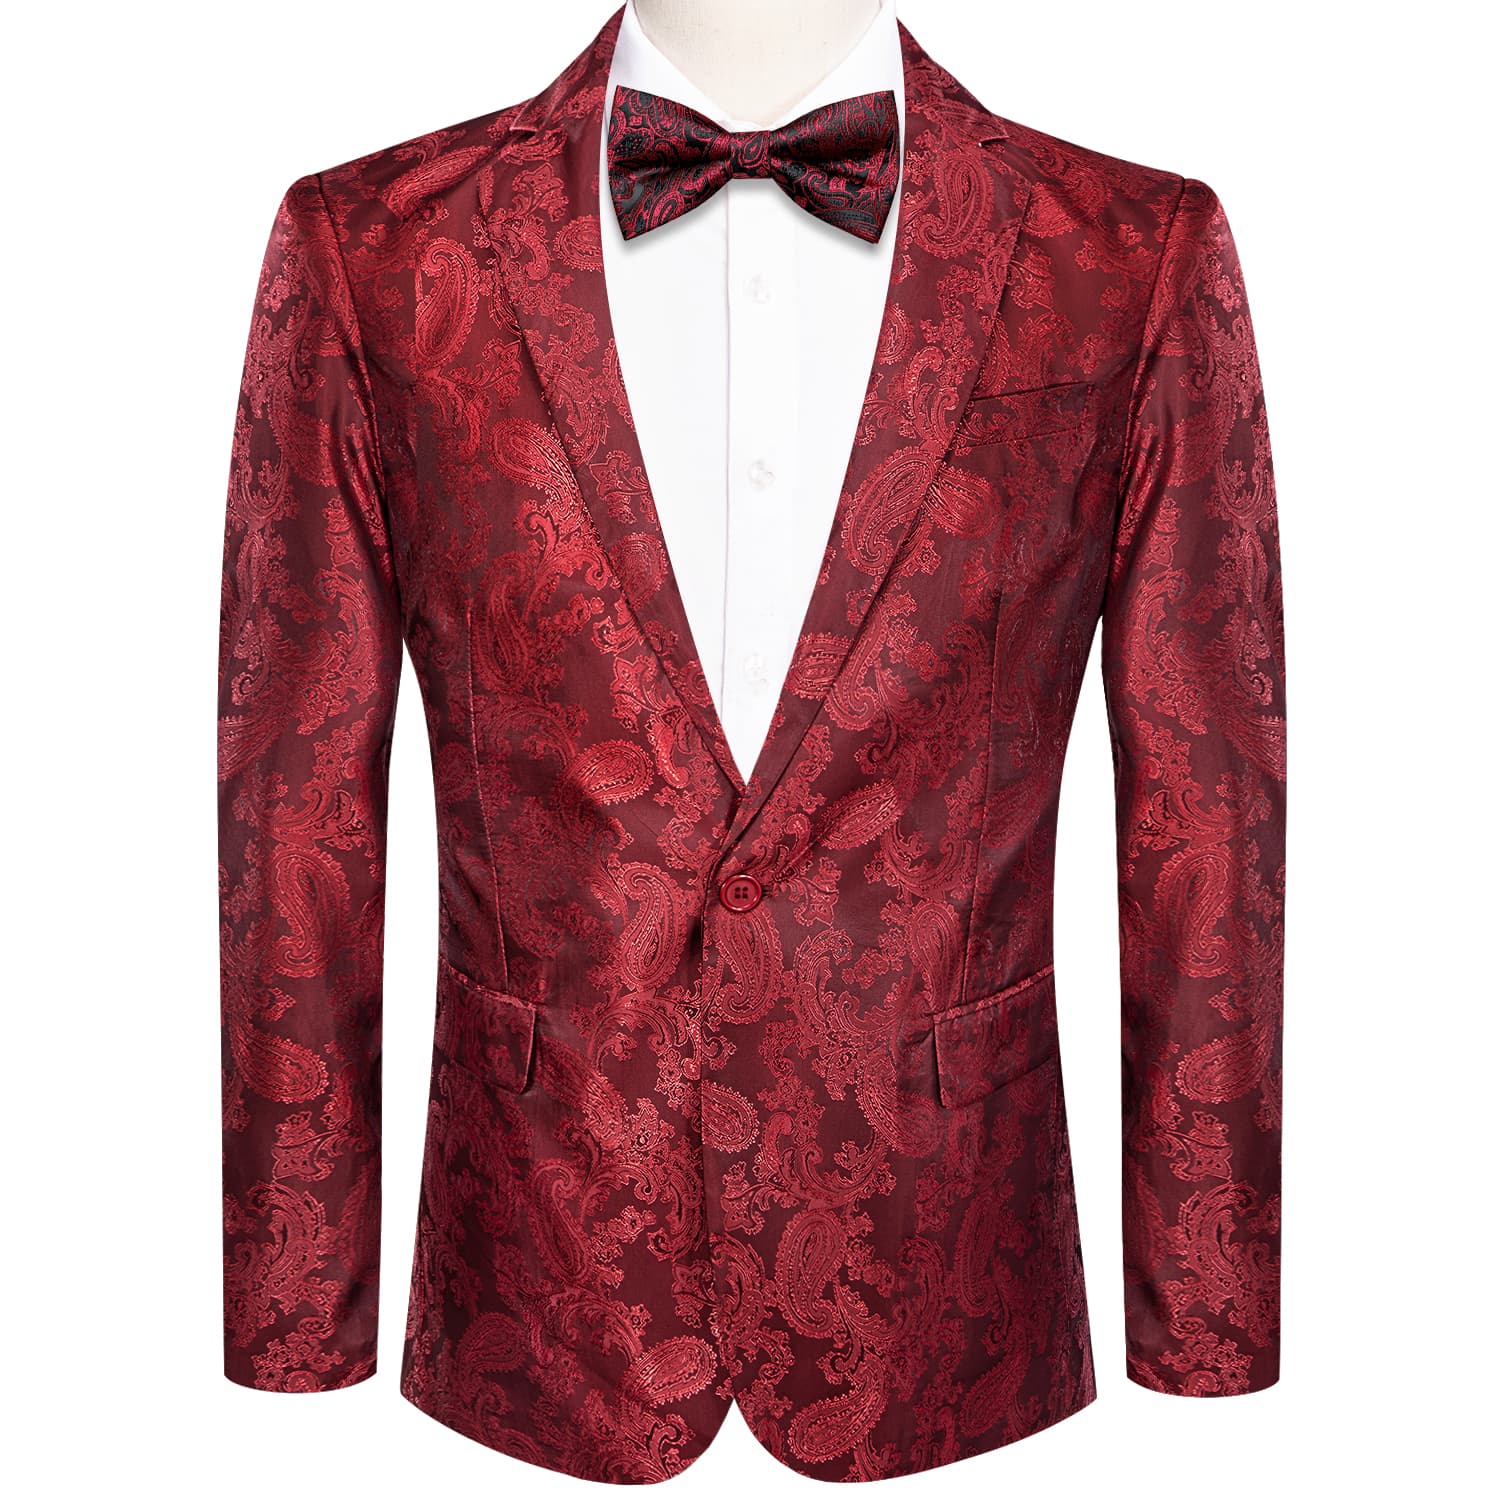 Notched Lapel Blazer Red Men's Wedding Paisley Top Men Suit